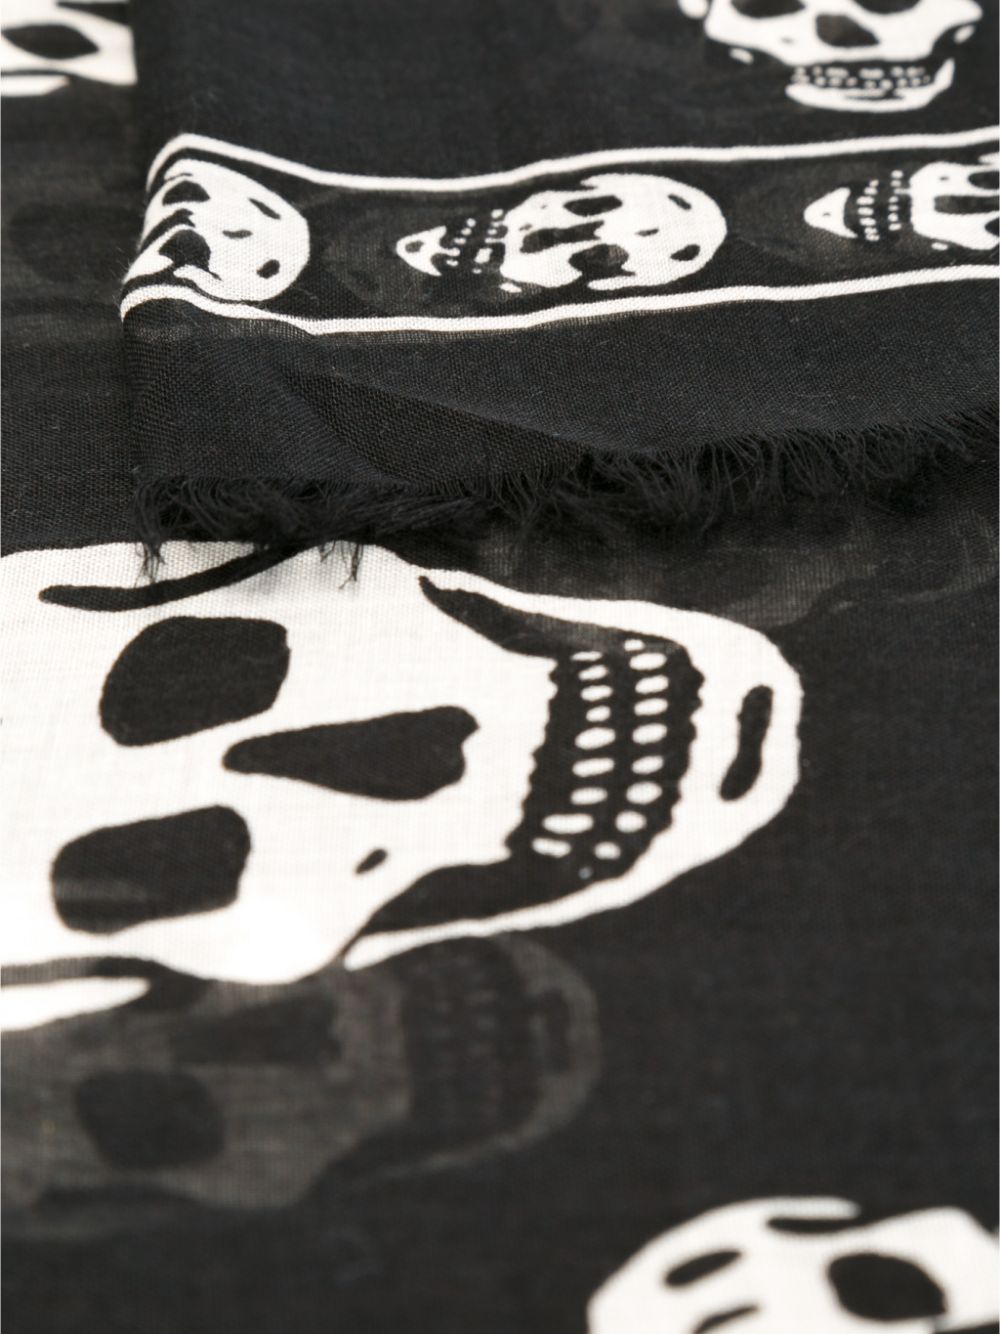 Skull scarf